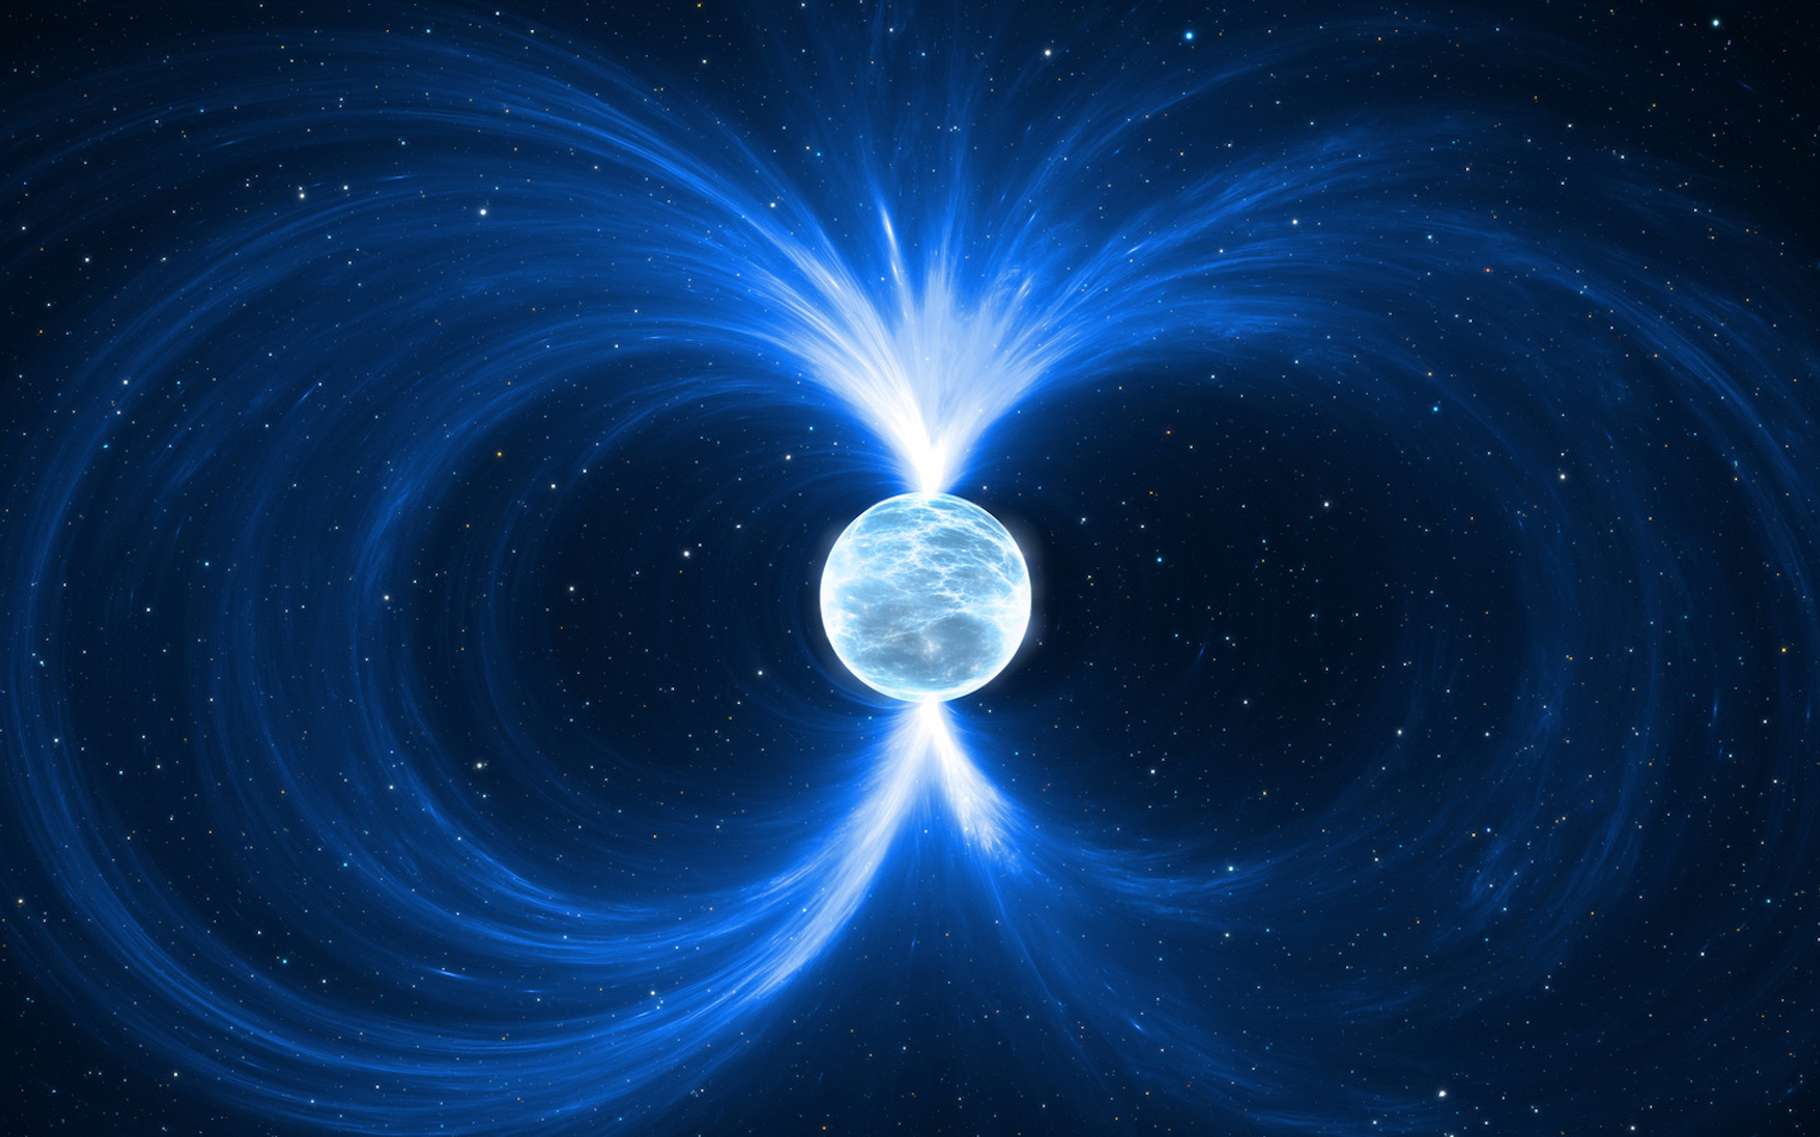 Un pulsar correspond à une étoile à neutrons qui émet un signal d'une période allant de l'ordre de la milliseconde à quelques dizaines de secondes. © Peter Jurik, Fotolia